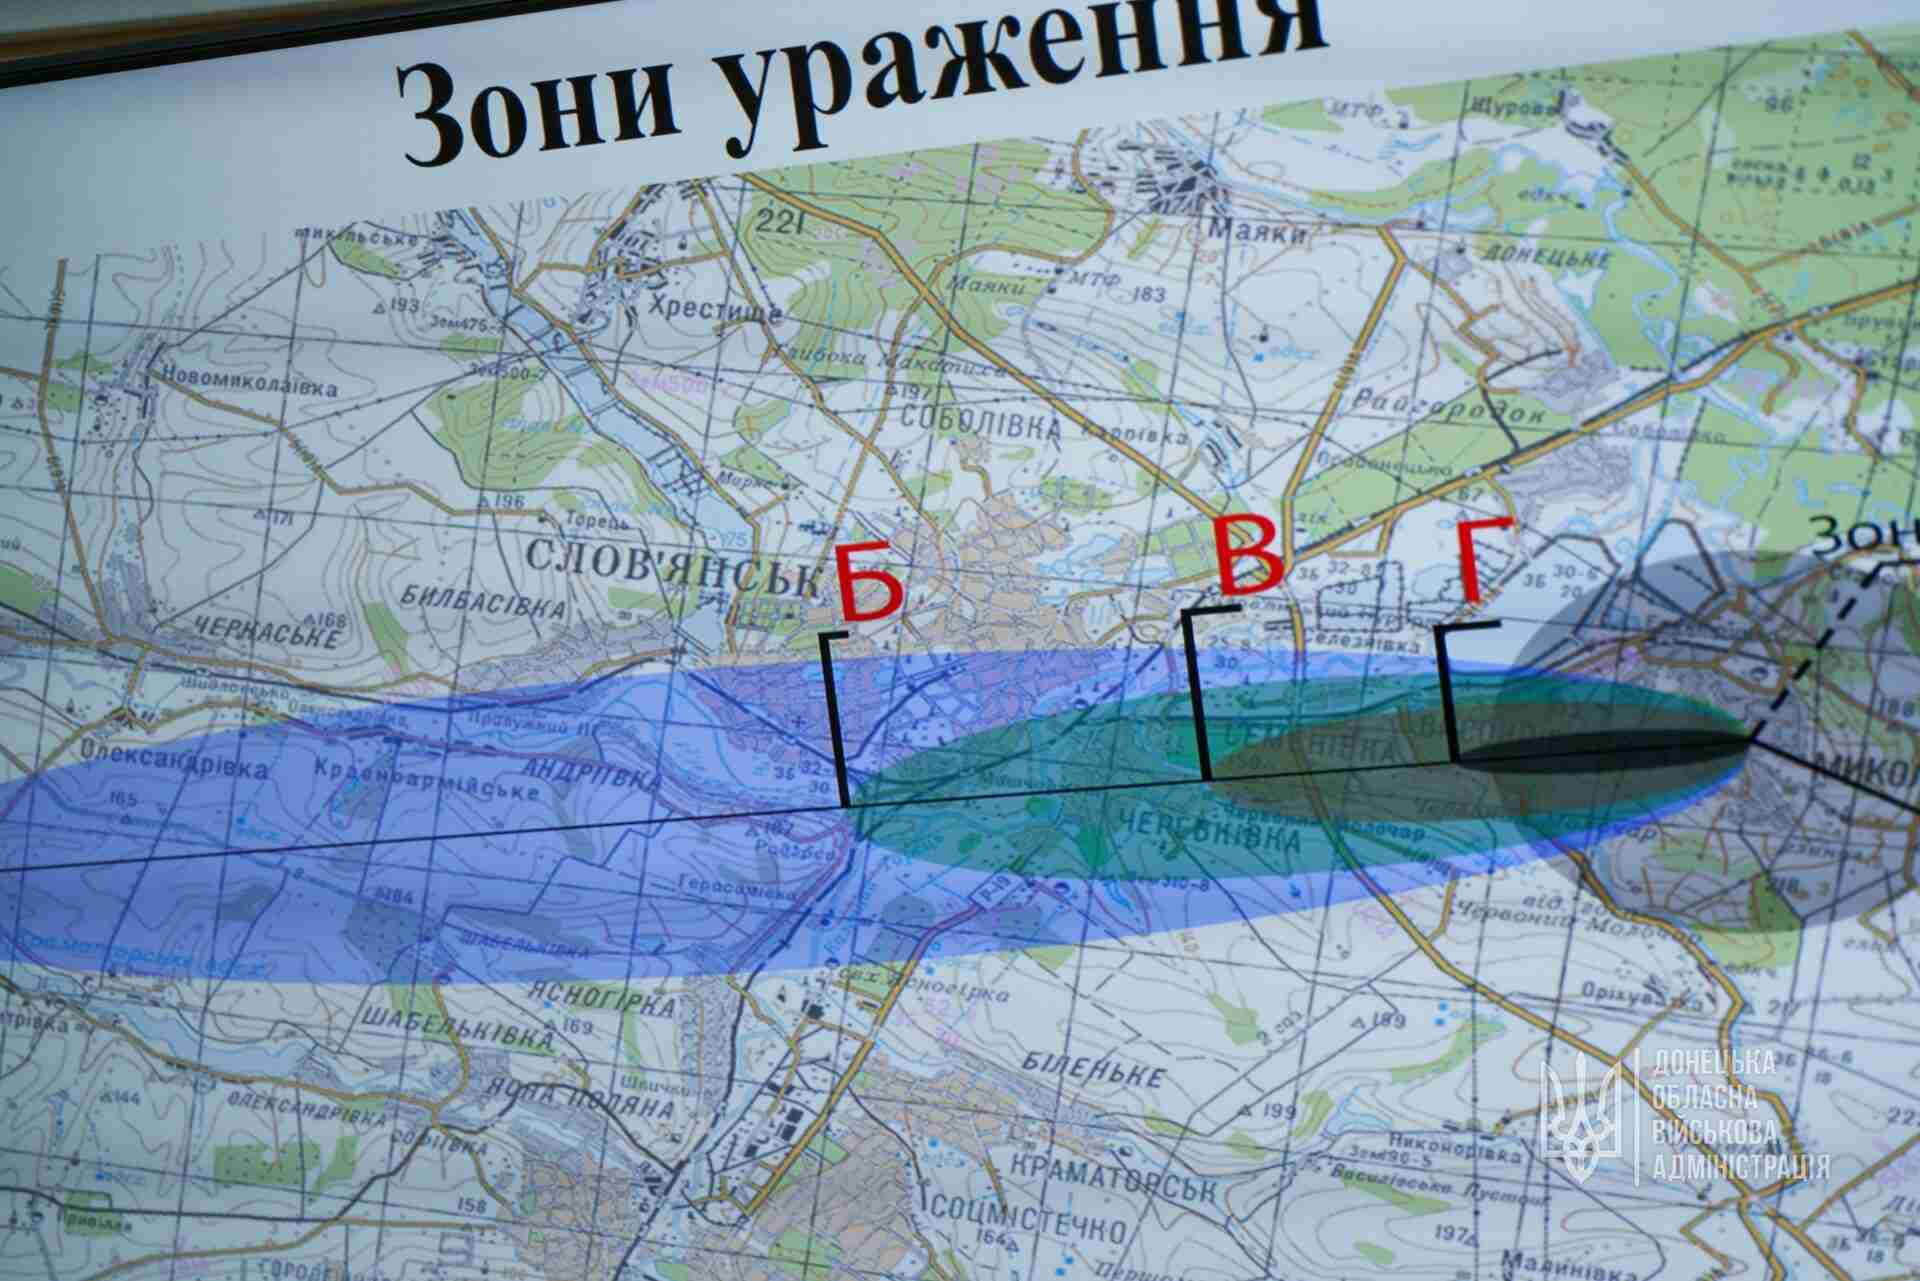 Підготовка важлива: на Донеччині провели навчання на випадок ядерного удару РФ (ФОТО)